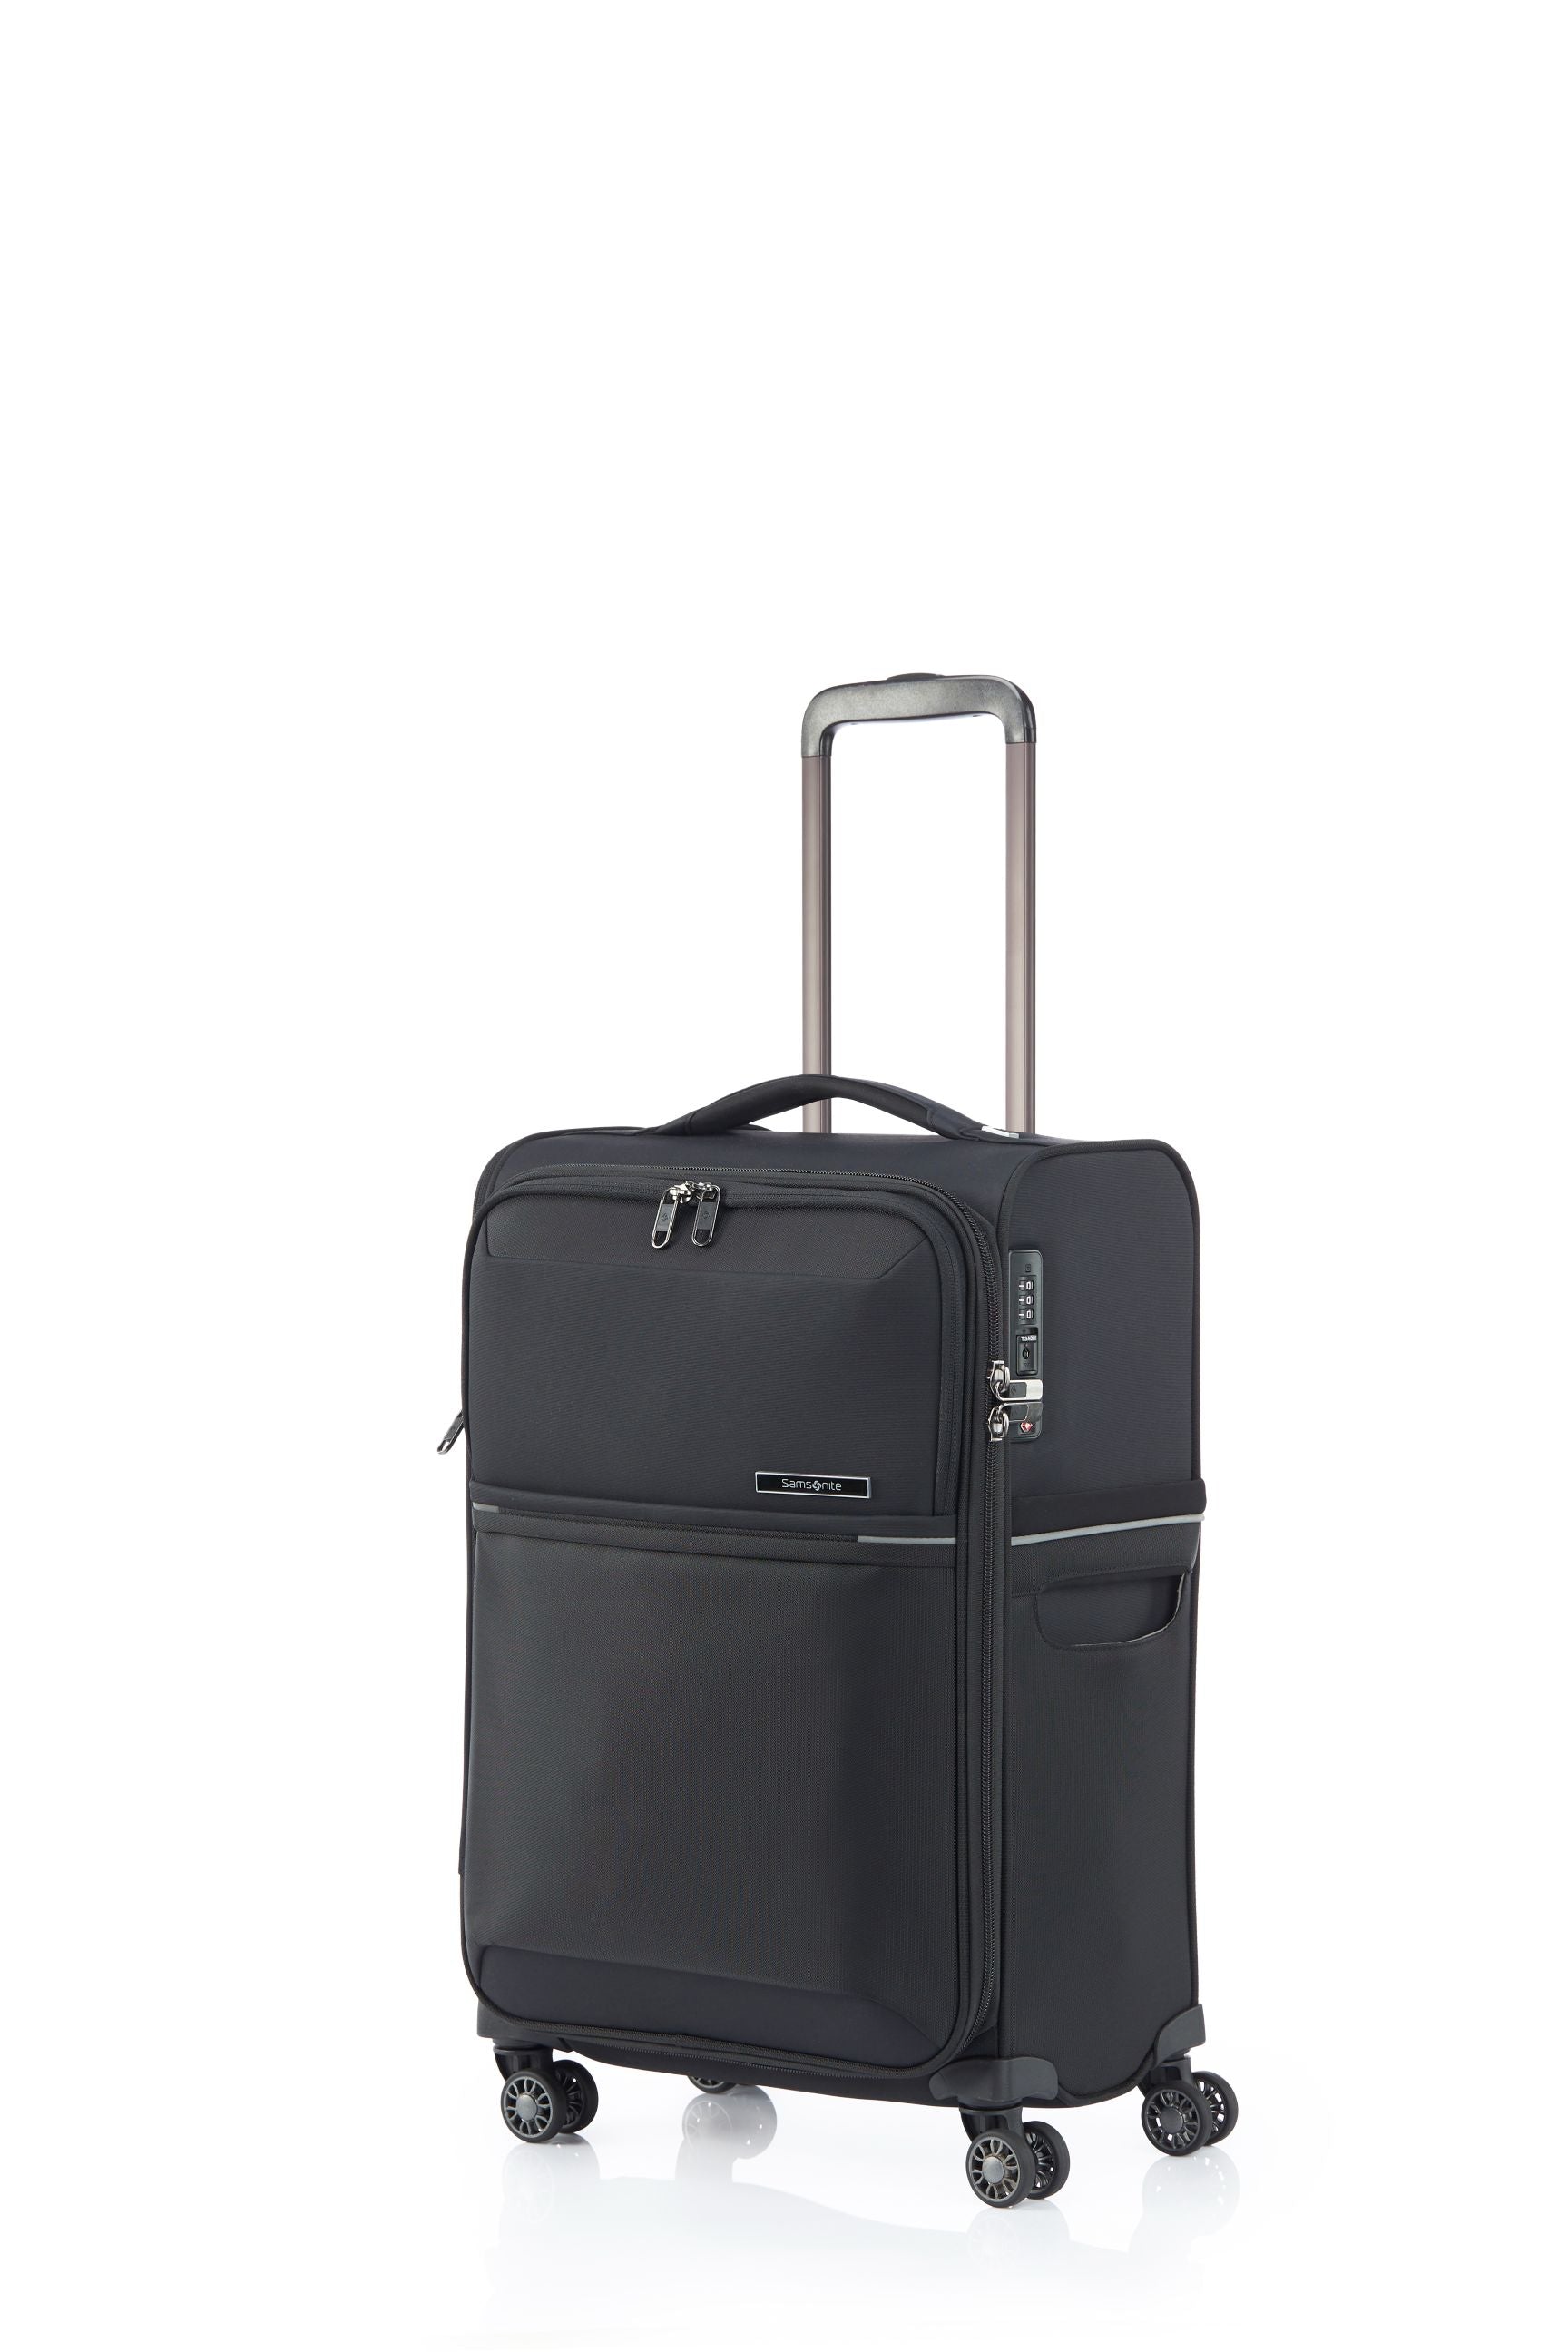 Samsonite - 73HR 55cm Small Suitcase - Black-1